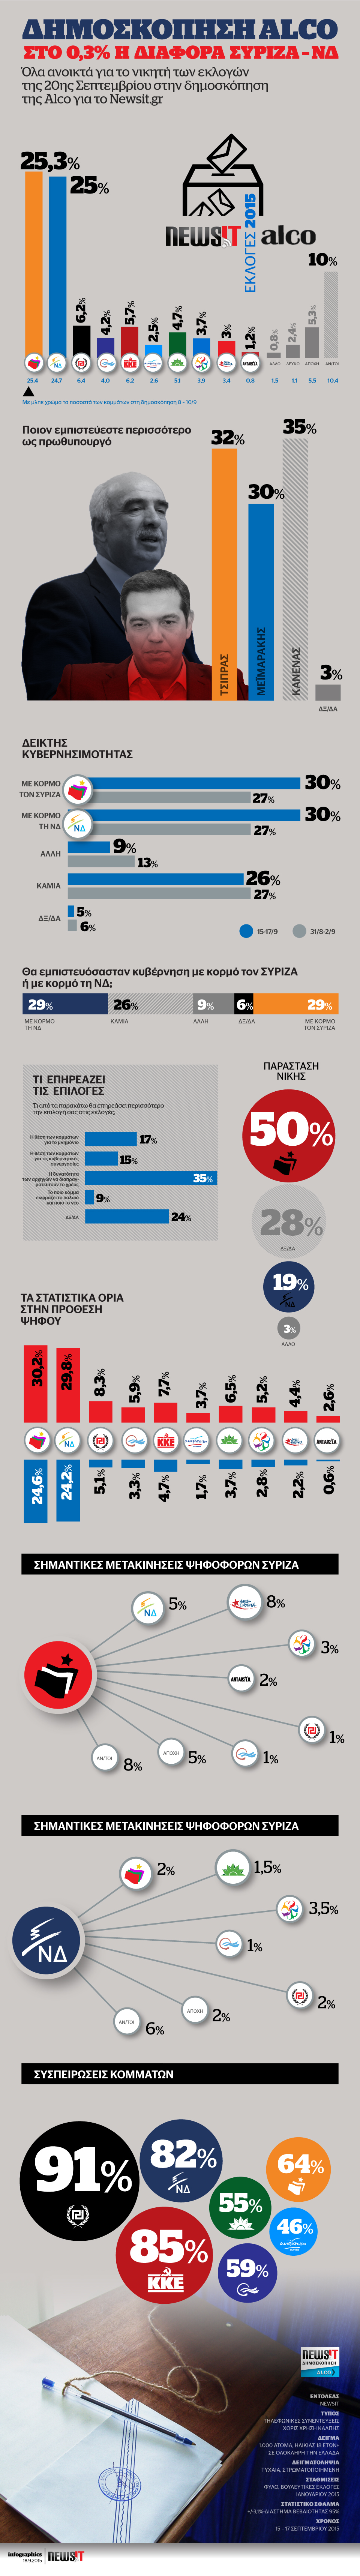 Κάντε κλικ πάνω στο infographic για να δείτε και να κατεβάσετε τη δημοσκόπηση της Alco για το newsit.gr